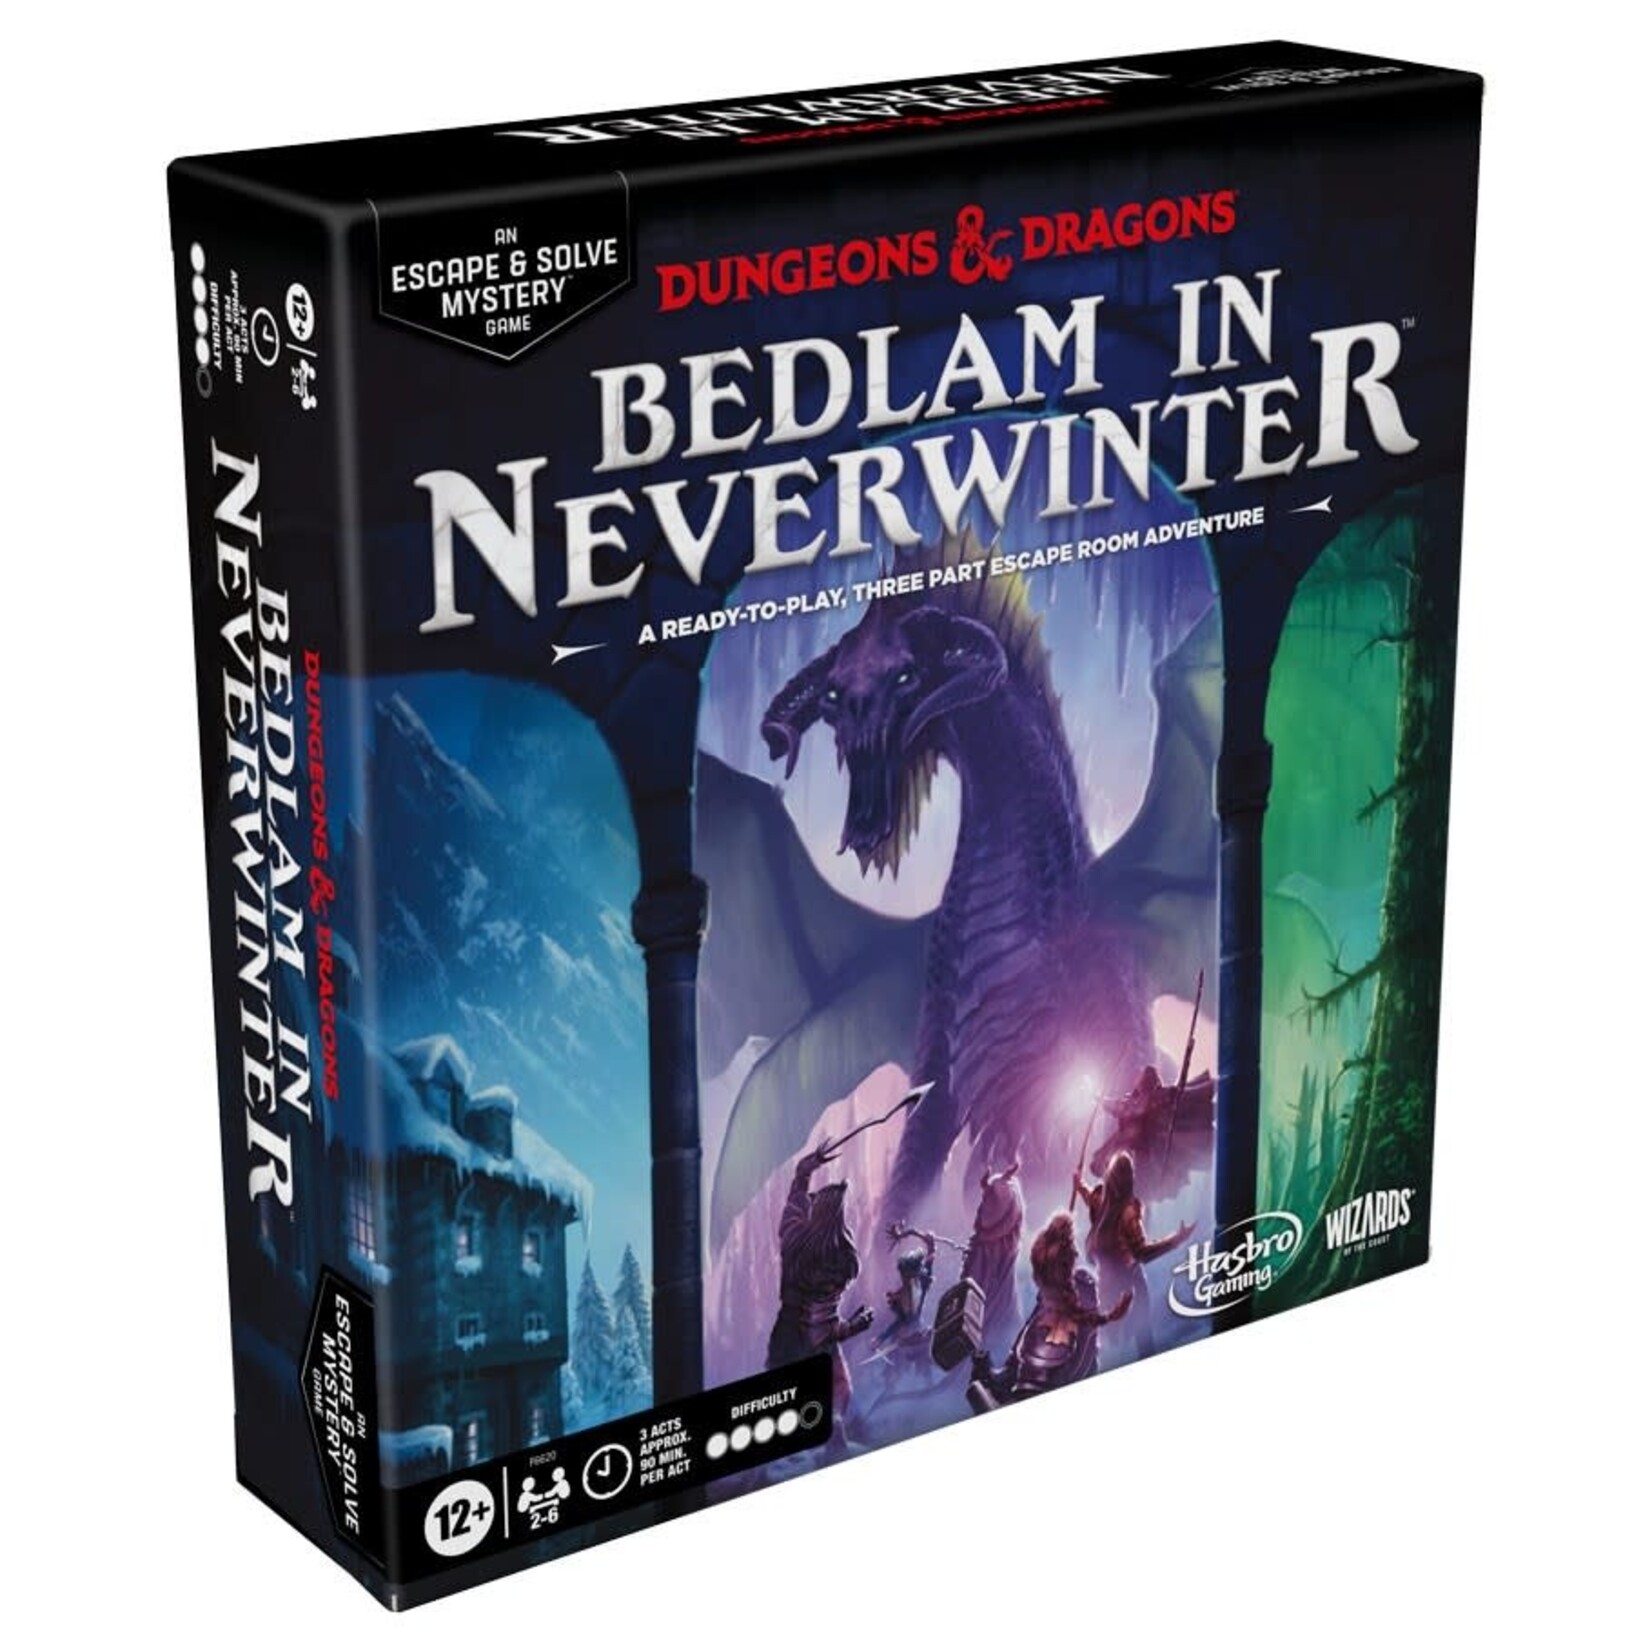 D&D: Bedlam in Neverwinter